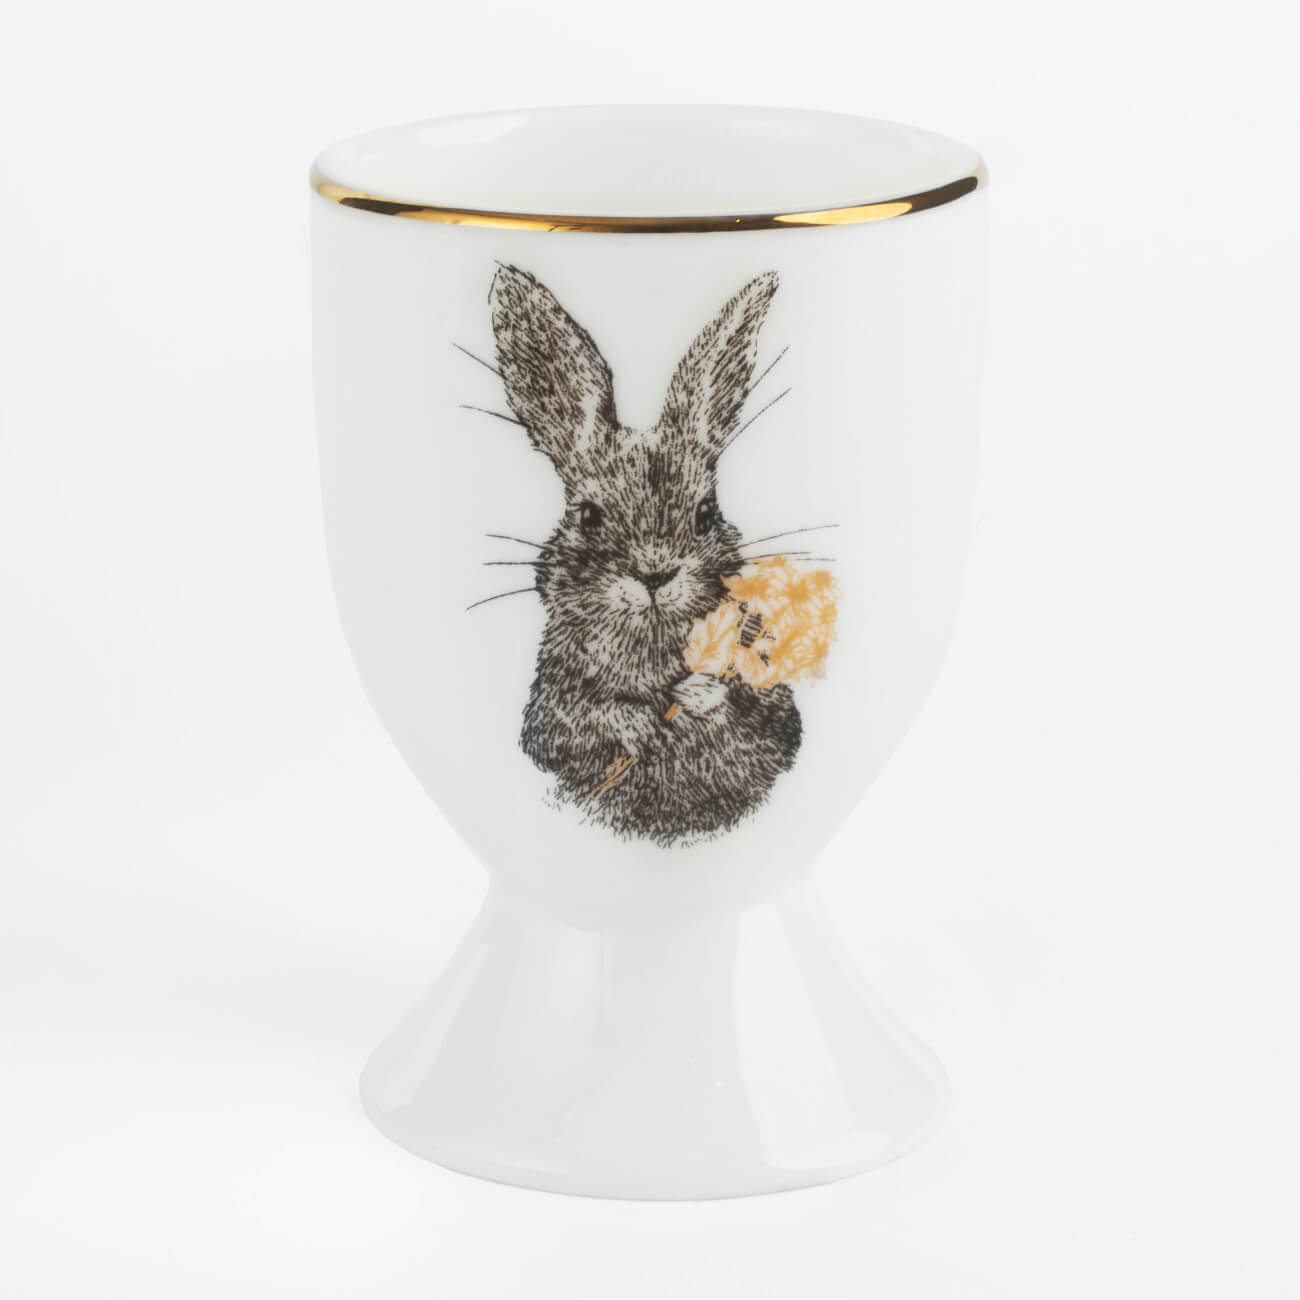 Подставка для яйца, 7 см, фарфор F, белая, с золотистым кантом, Кролик с цветами, Rabbit gold подставка под телефон денежный кролик гжель с золотом